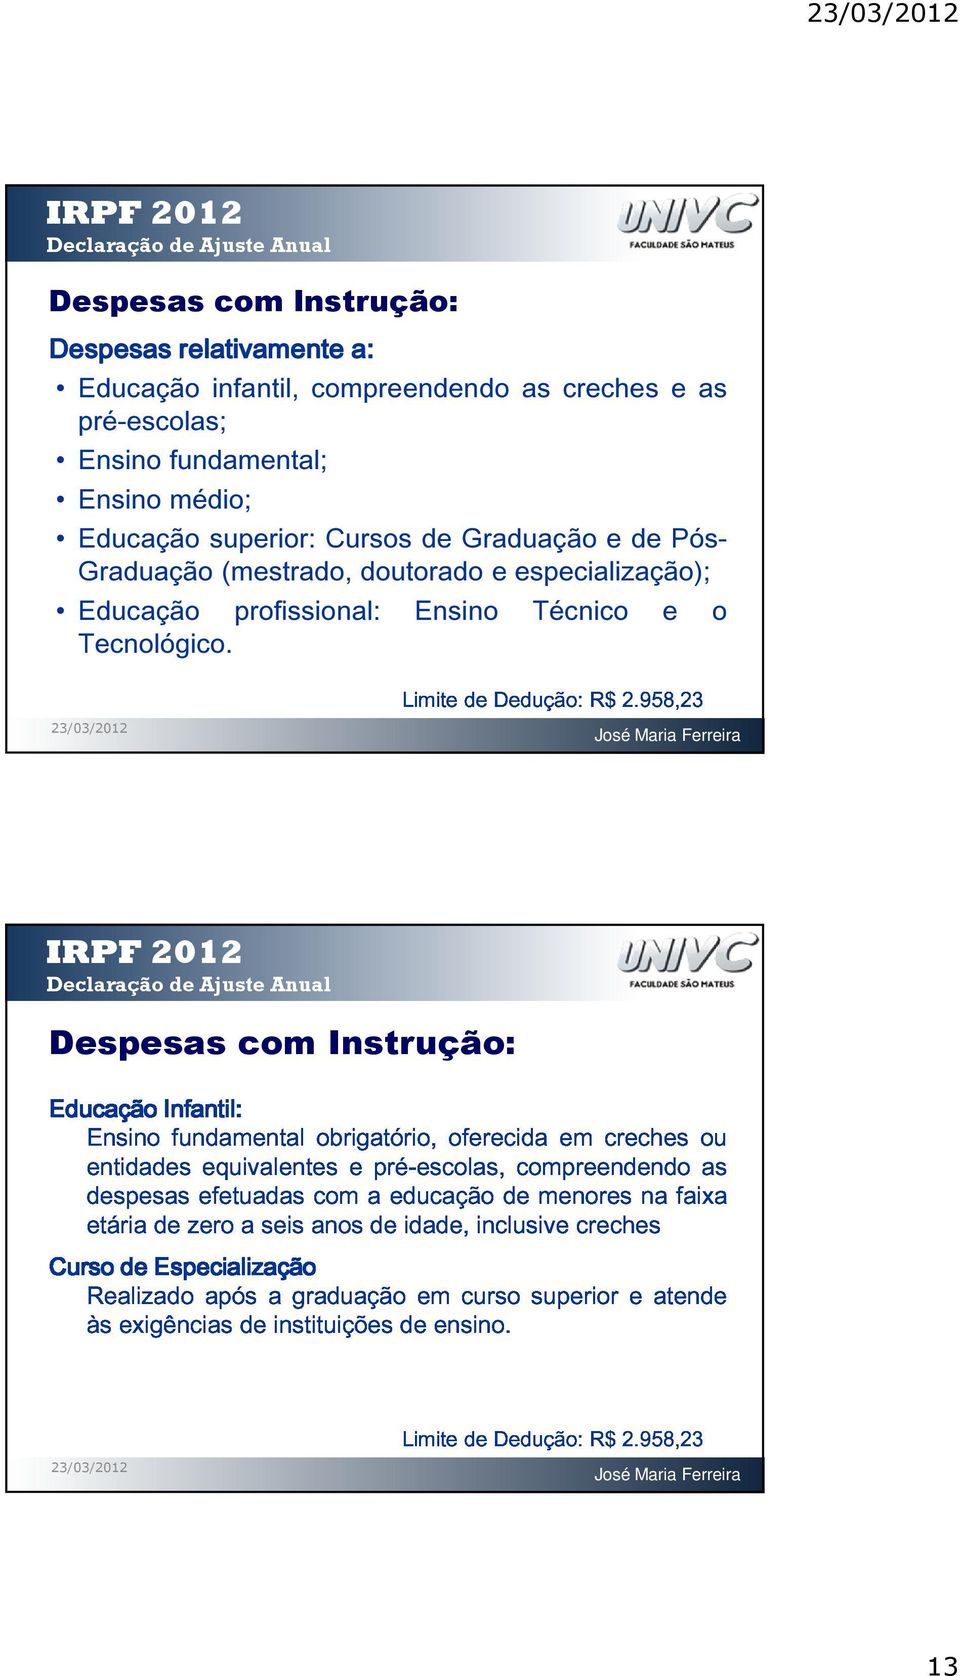 IRPF EducaçãoInfantil Ensinofundamentalobrigatório,oferecidaemcrechesou 2012 Infantil: Declaração entidadesequivalentesepré-escolas,compreendendoas de Ajuste Anual